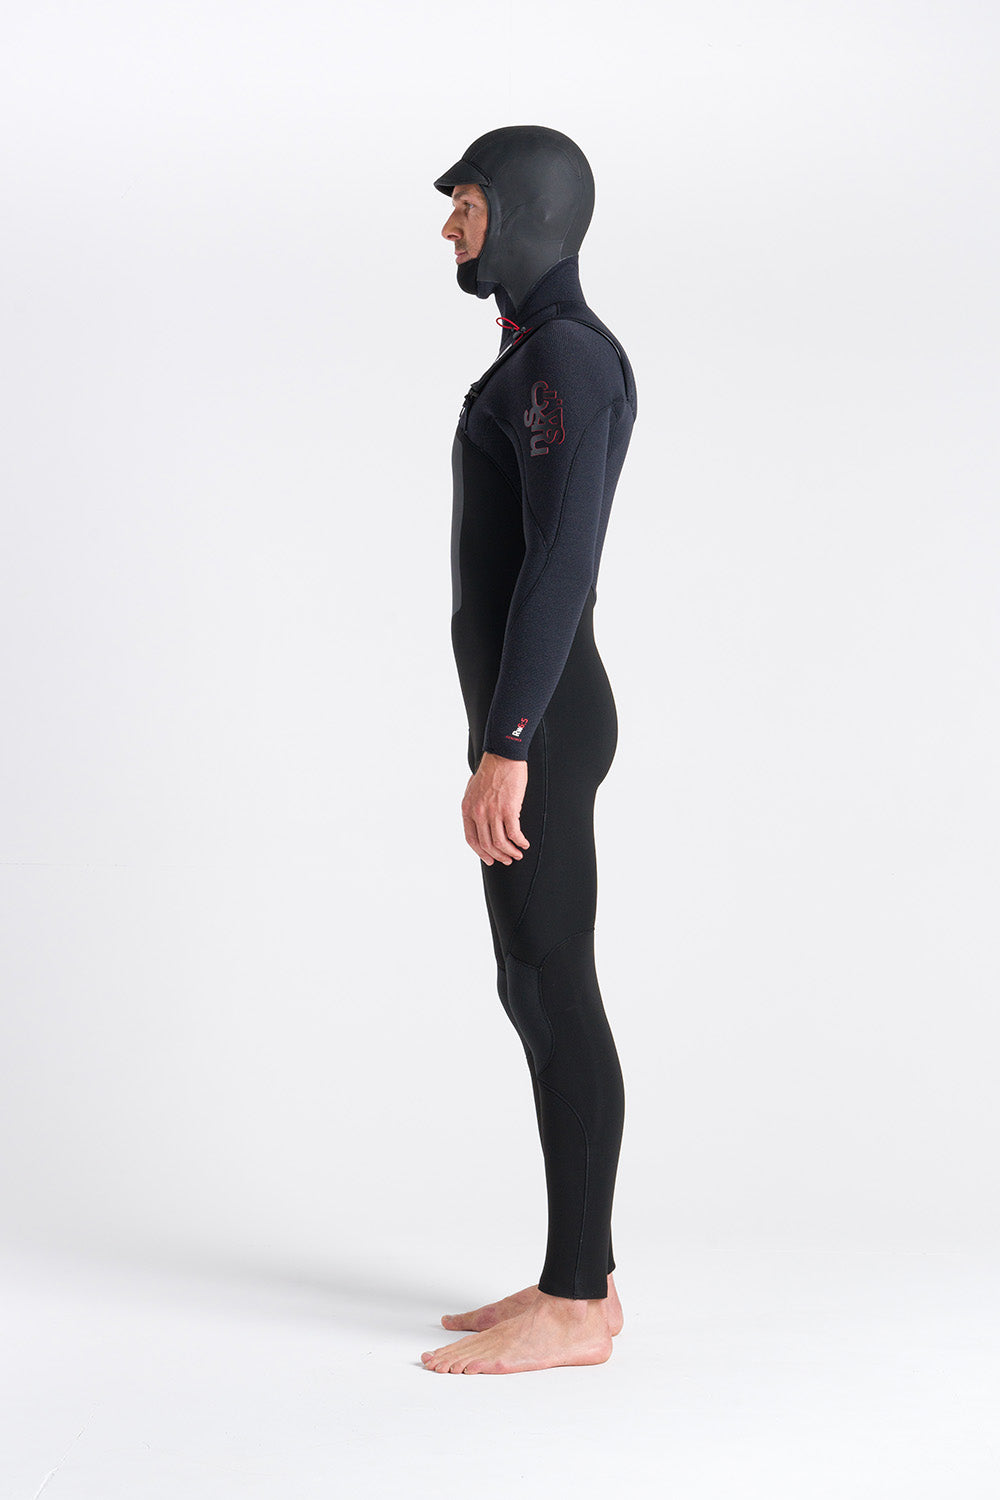 hooded-winter-wetsuit-6mm-men-galway-blacksheepsurf